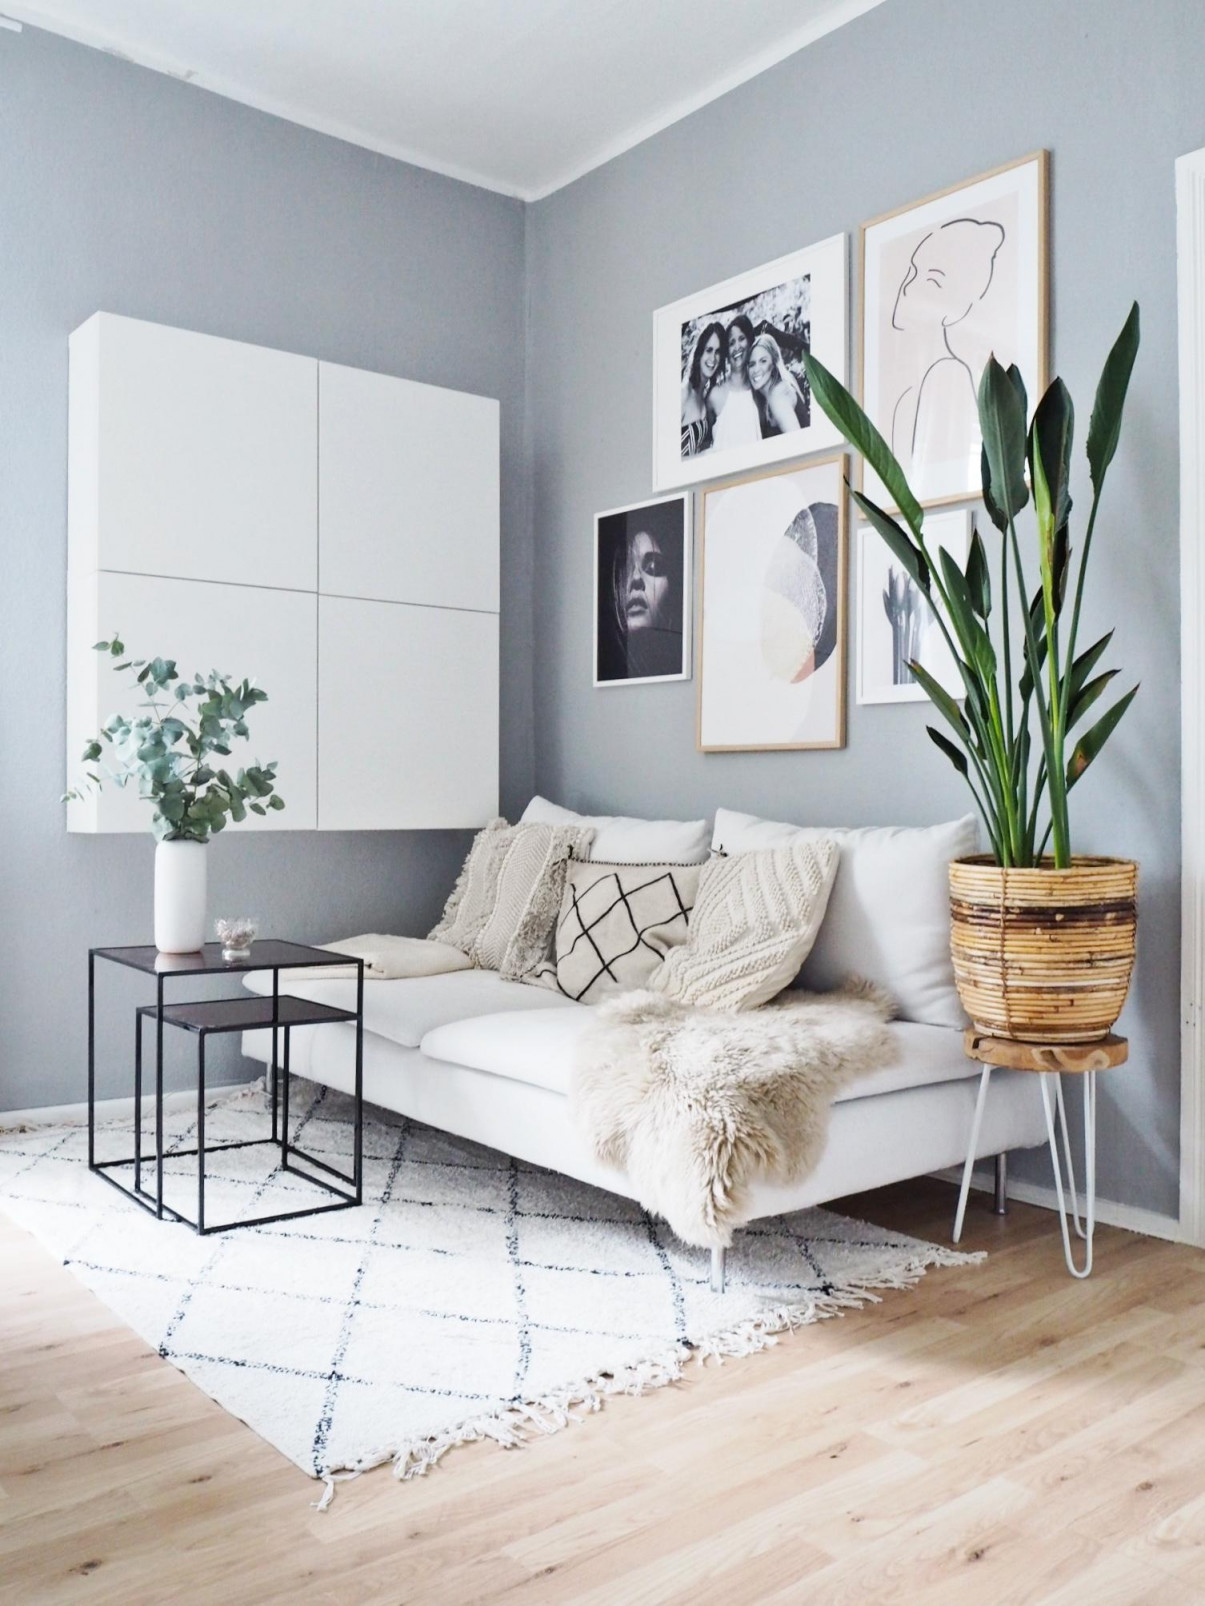 Bilderwandideen Inspiration Bei Couch von Wandbilder Ideen Wohnzimmer Photo